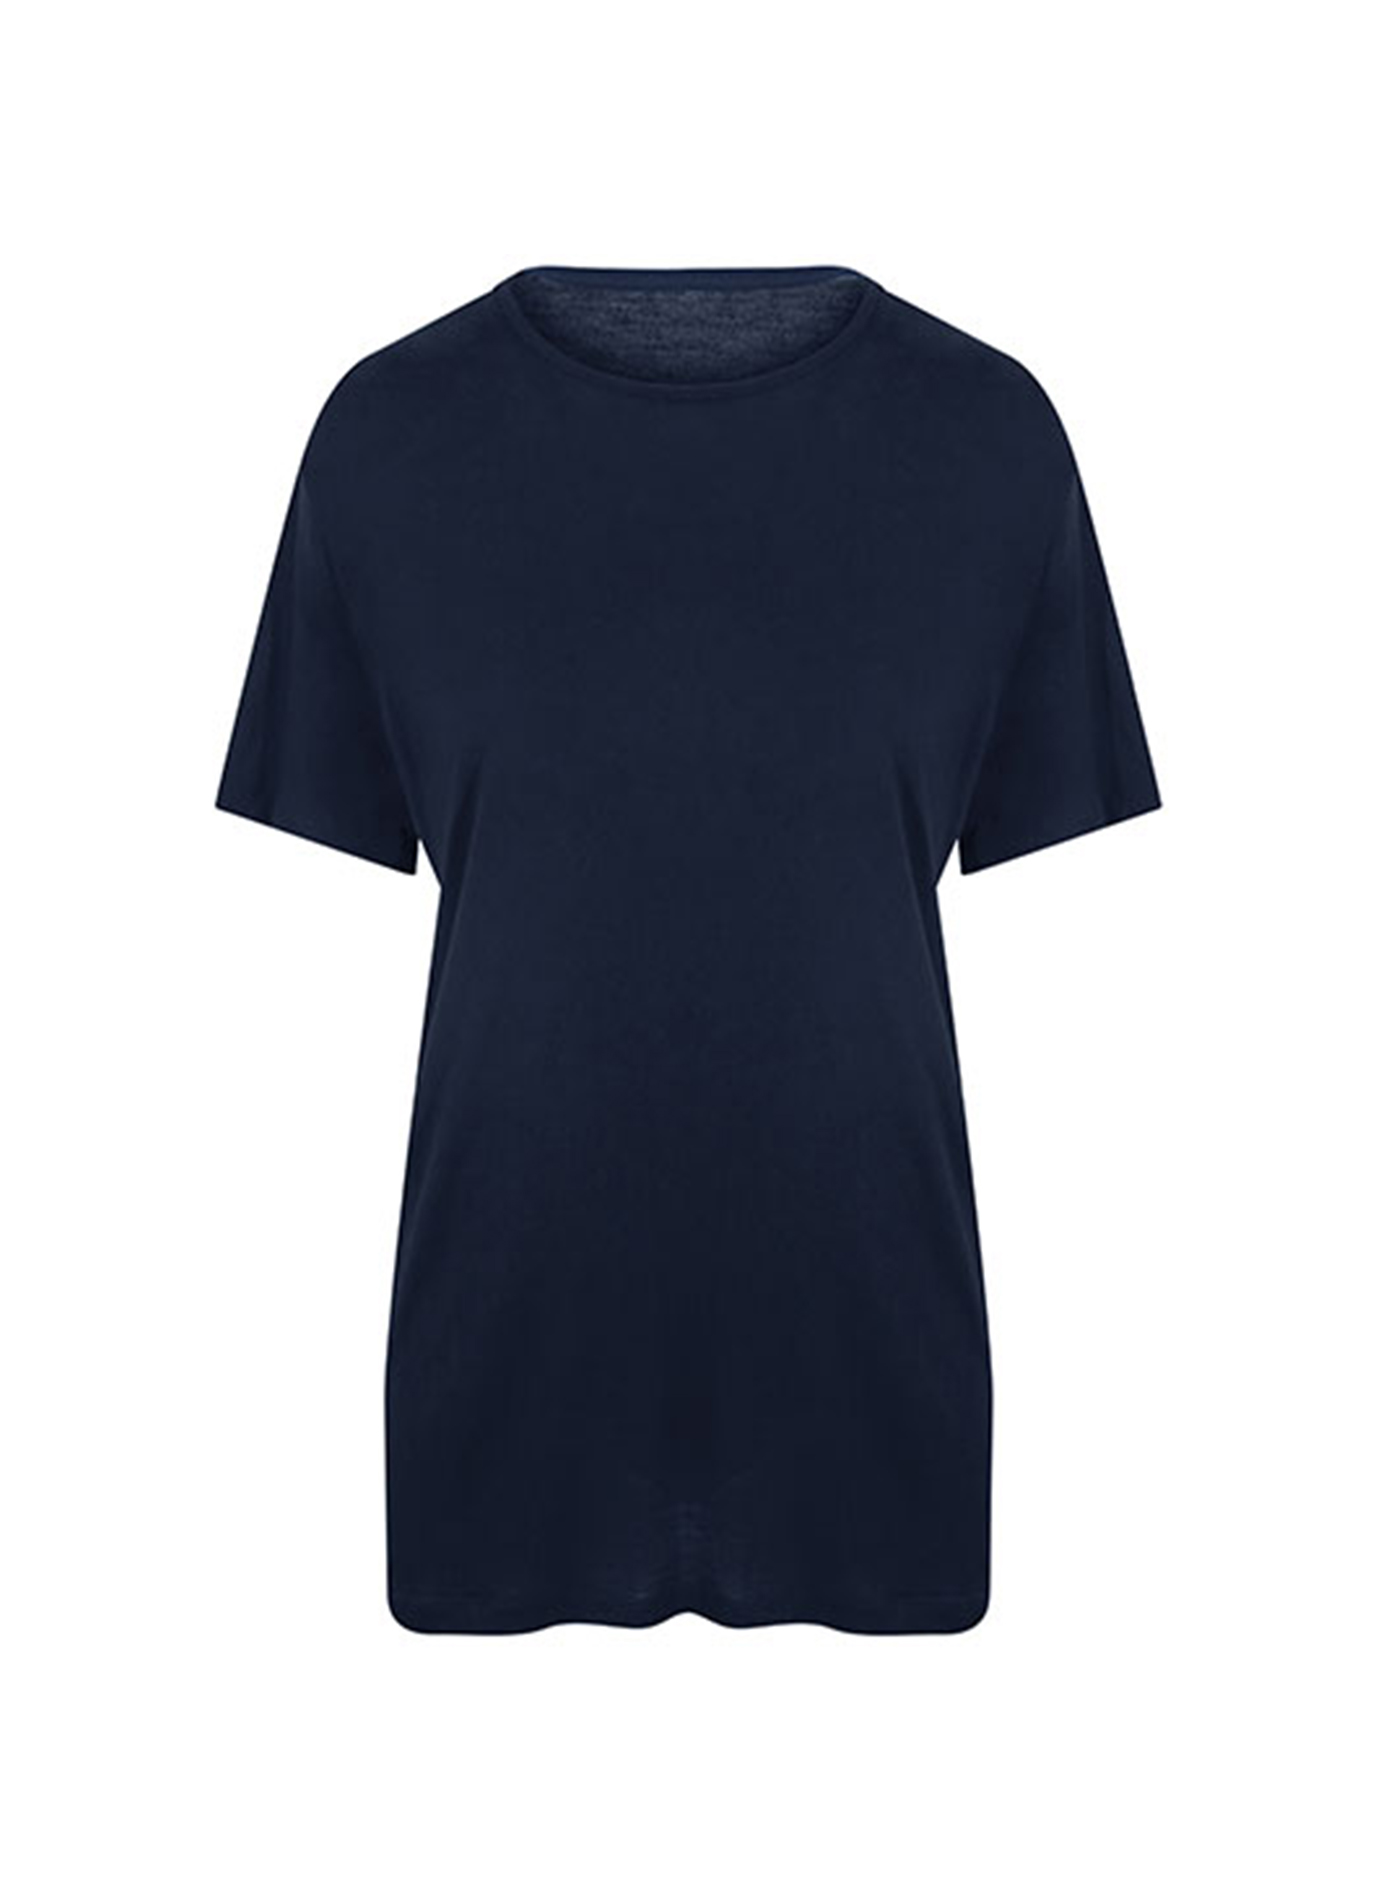 Pánské tričko Ecologie DainTree EcoViscose - Námořní modrá S